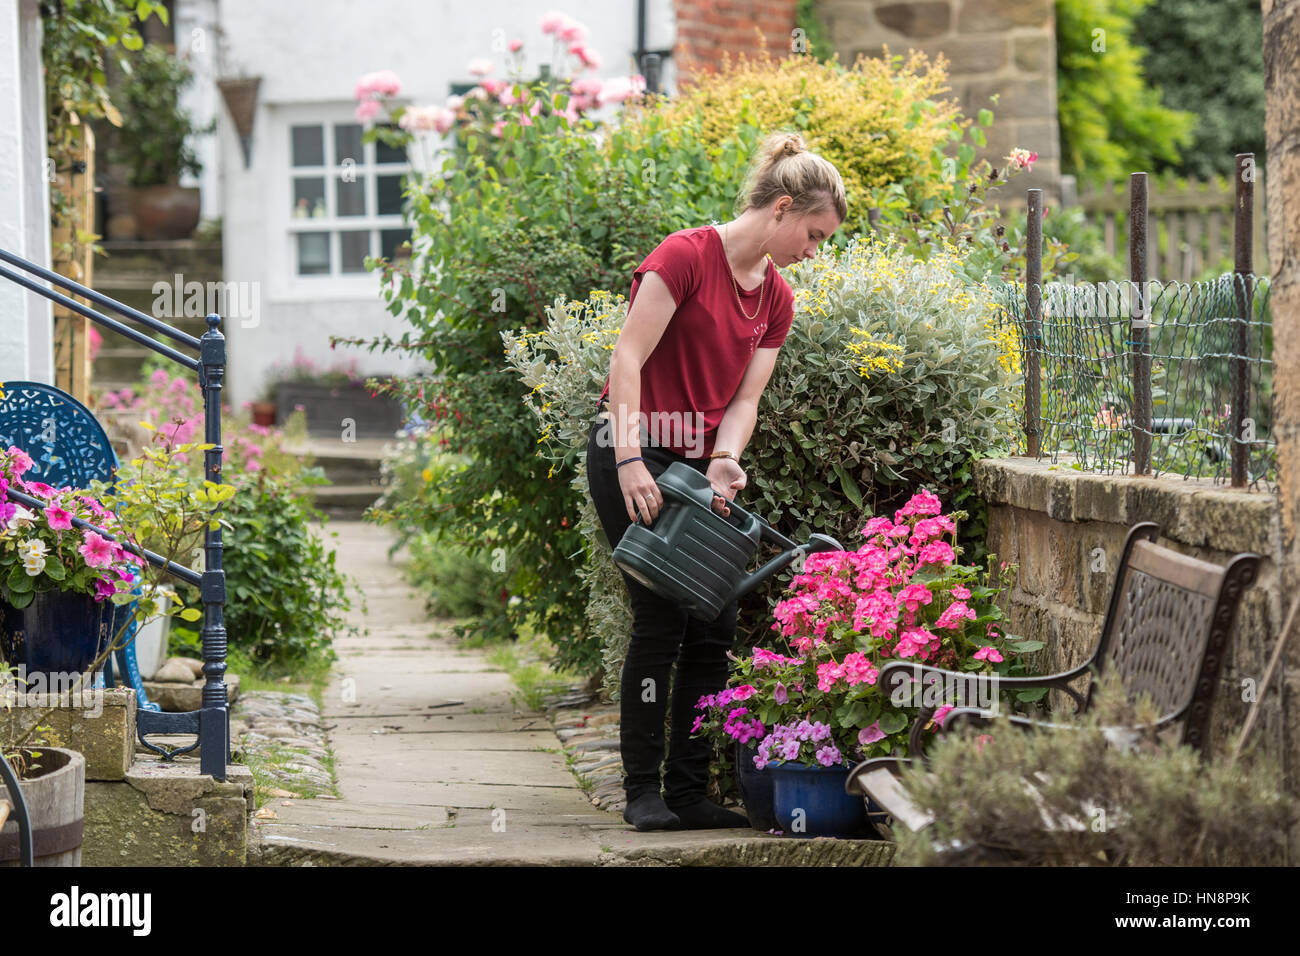 Royaume-uni, Angleterre, dans le Yorkshire - une jeune femme d'arroser ses fleurs dans un petit village de pêcheurs appelé Robin Hood's Bay, situé sur la côte de l'Yorkshir Banque D'Images